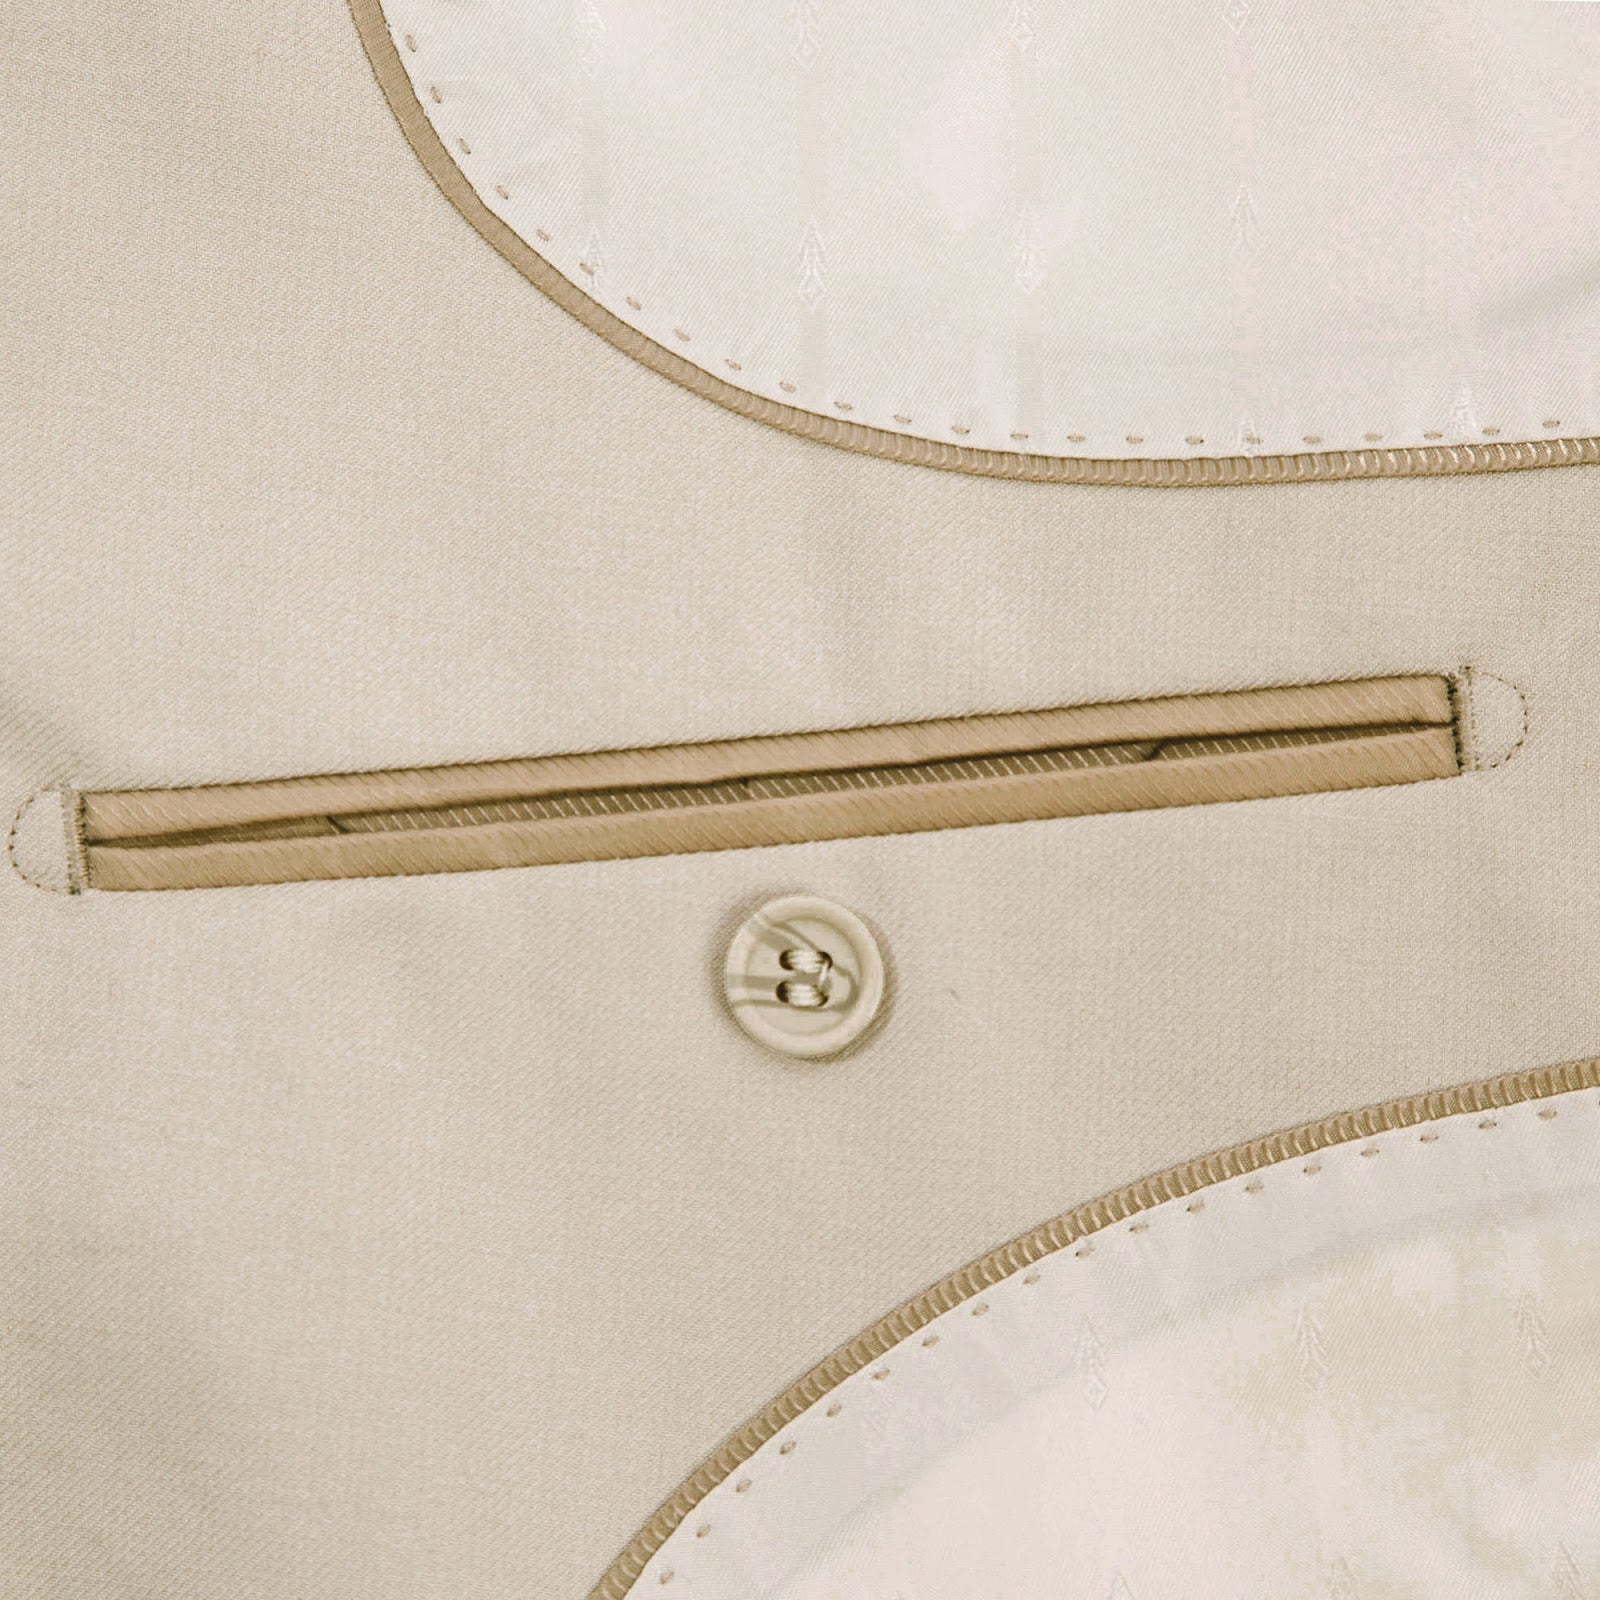 RENOIR Beige 2-Piece Classic Fit Single Breasted Notch Lapel Suit 201-3